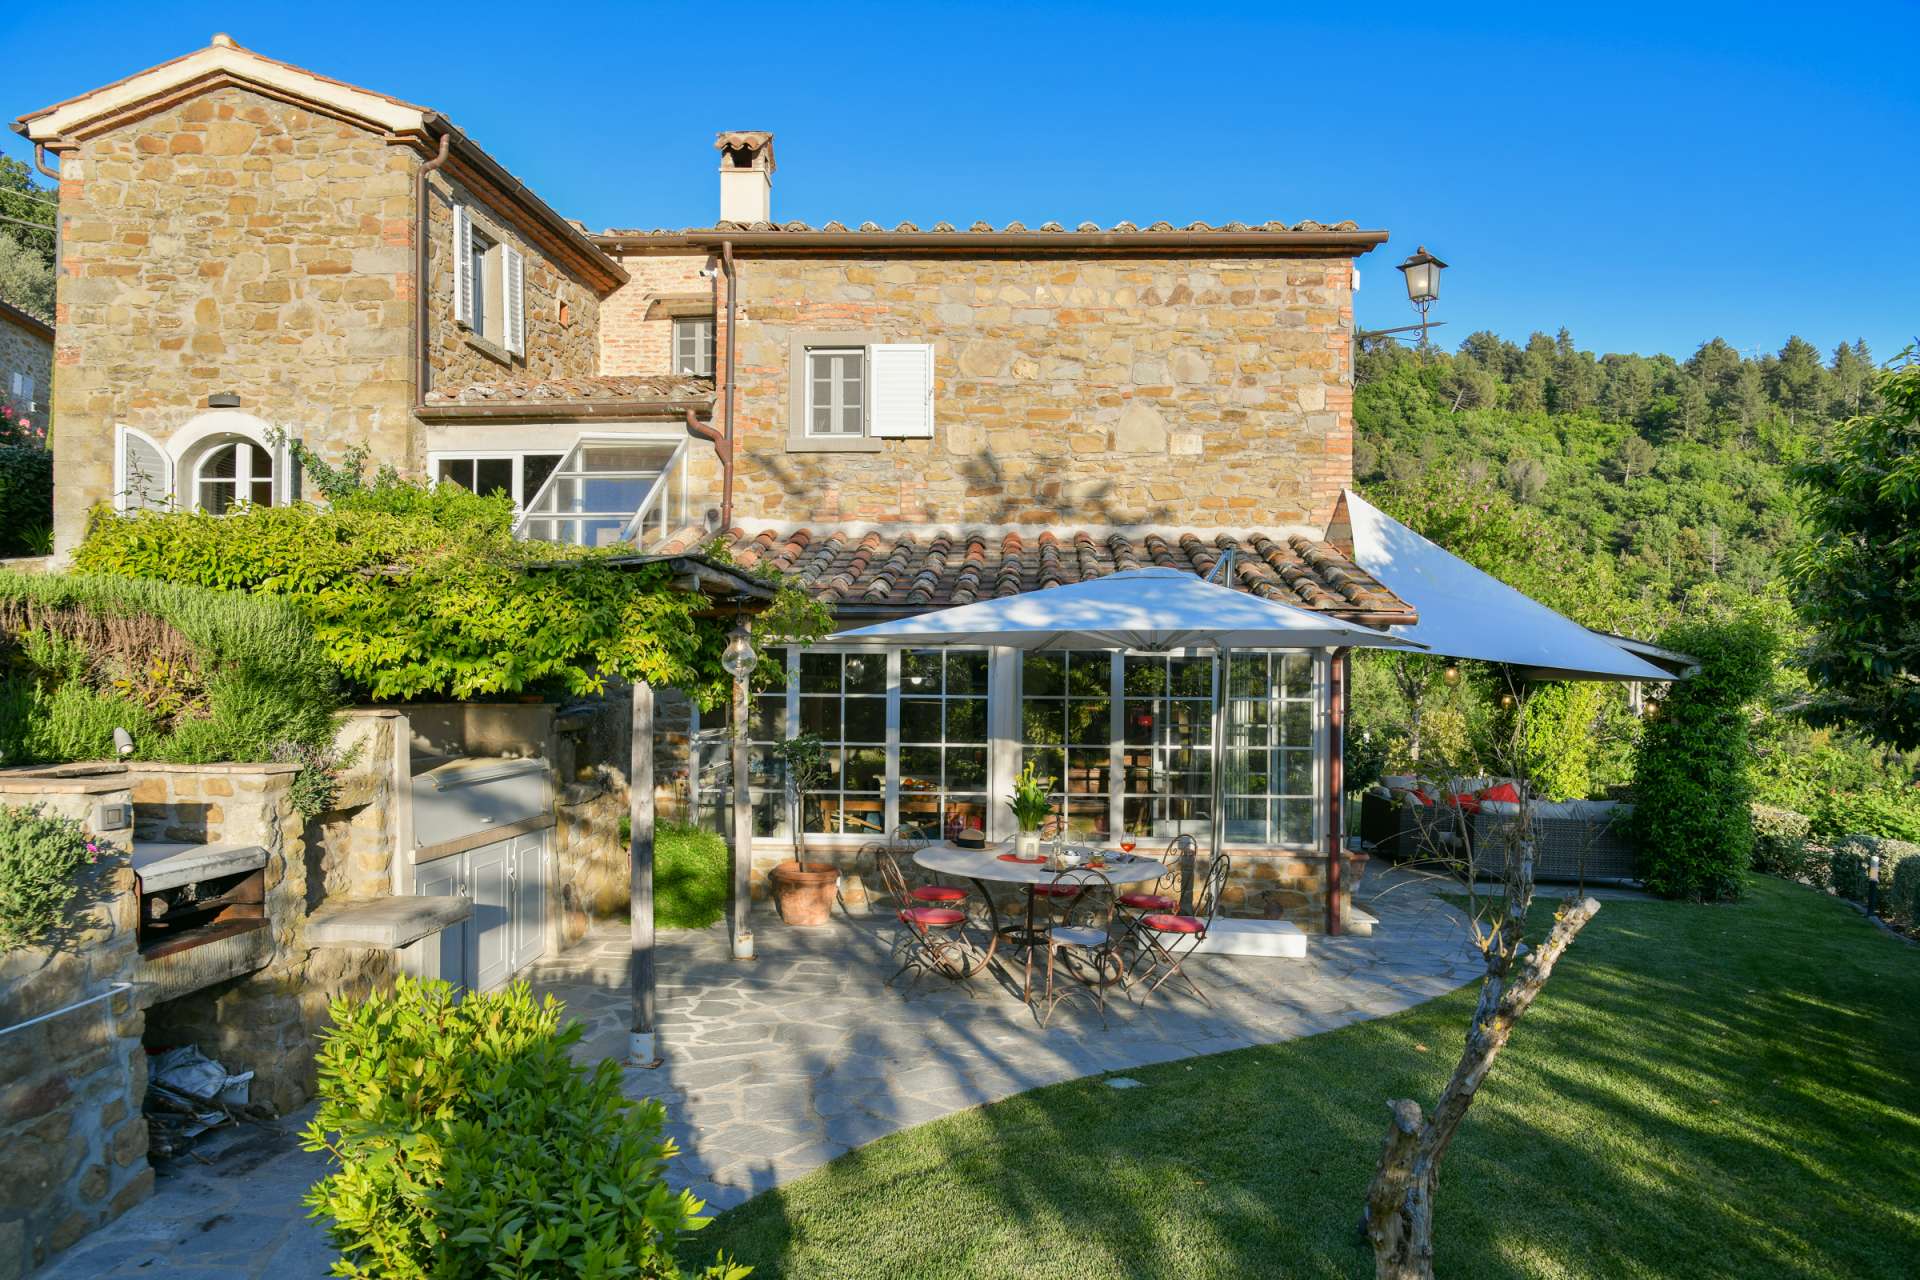 Casale Il Melograno | Luxury Villa with Pool | Near Cortona, Tuscany ...